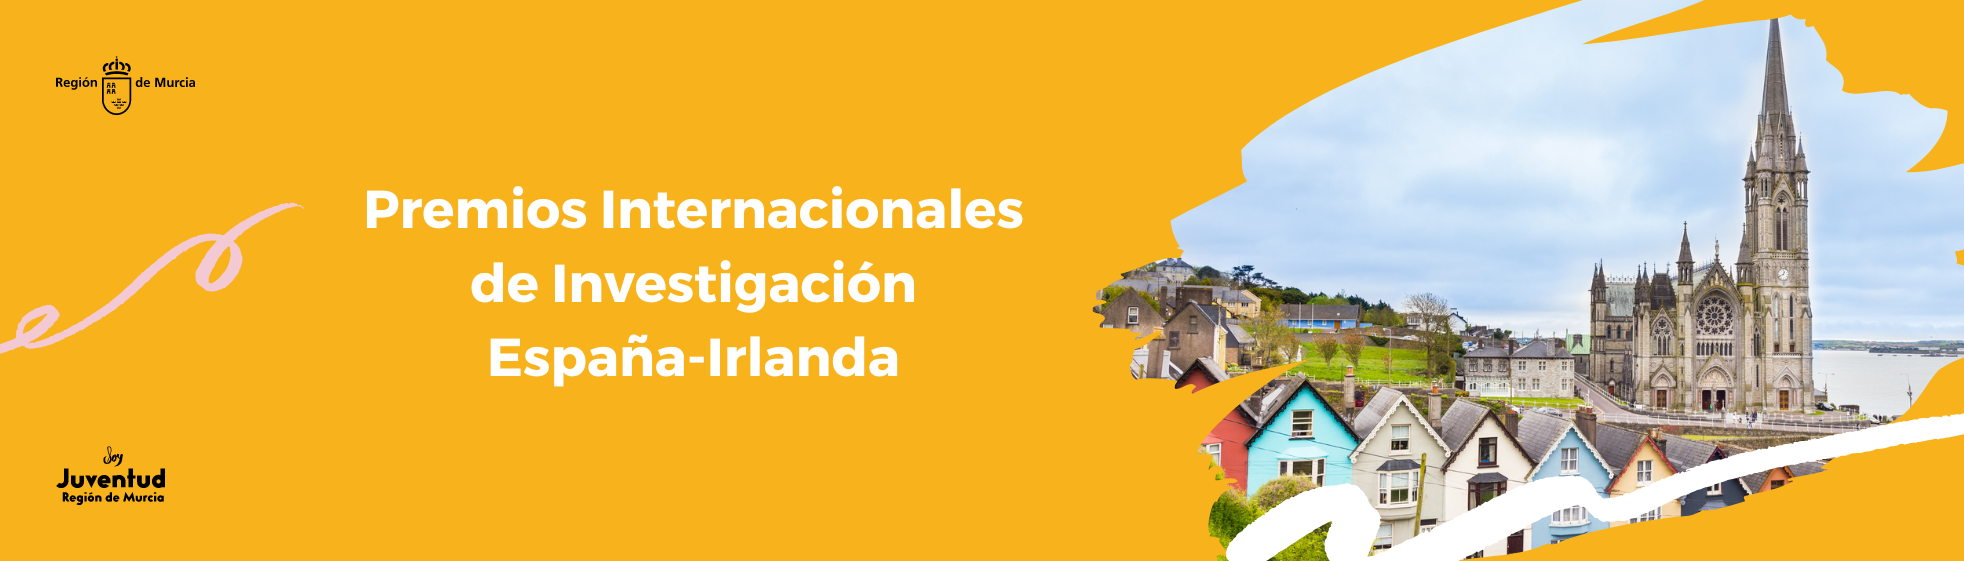 Premios Internacionales de Investigación España-Irlanda